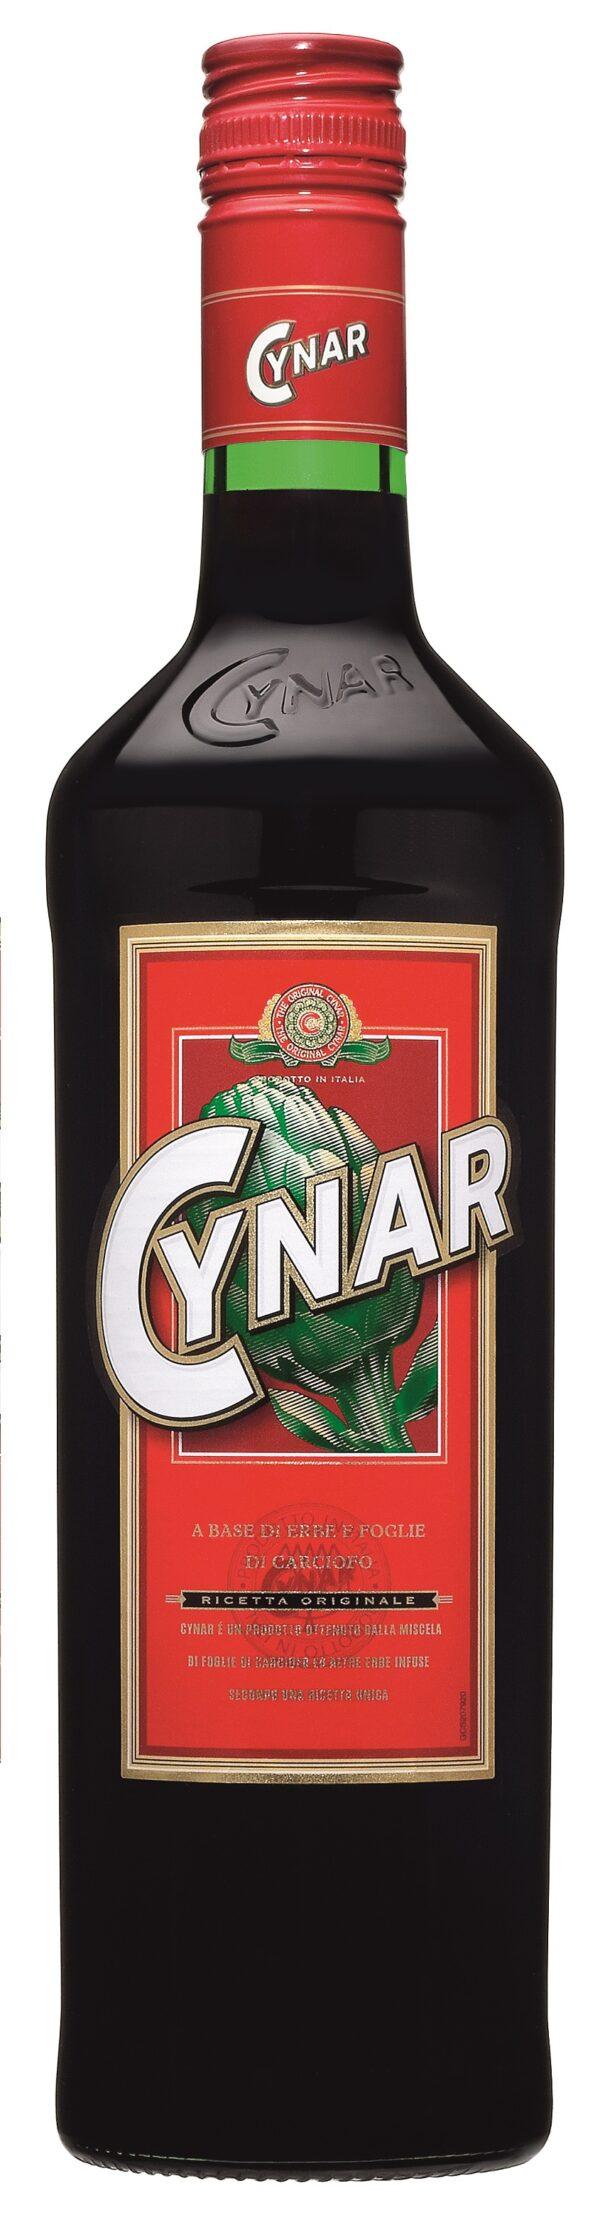 Cynar. (Courtesy of Gruppo Campari)